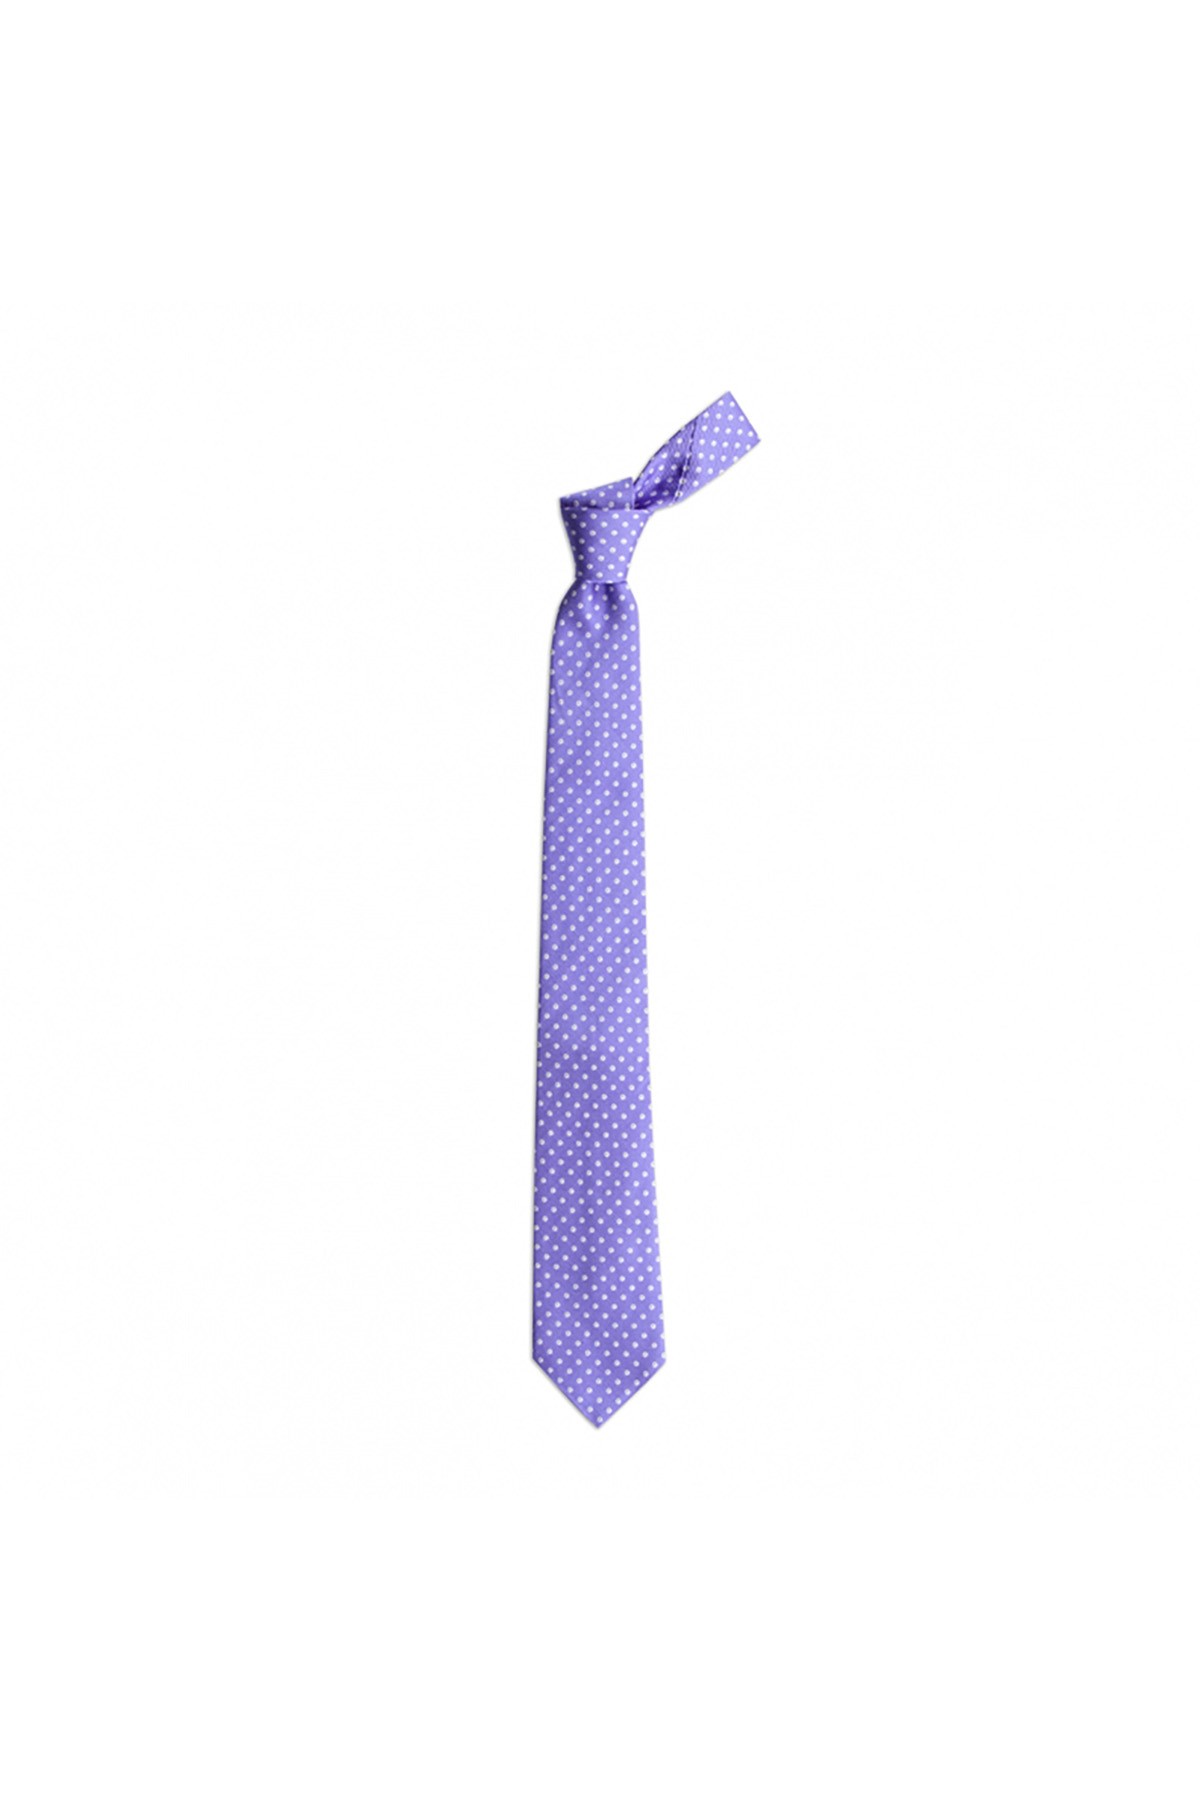 Klasik desenli 7,5 cm genişliğinde ipek kravat - Lila